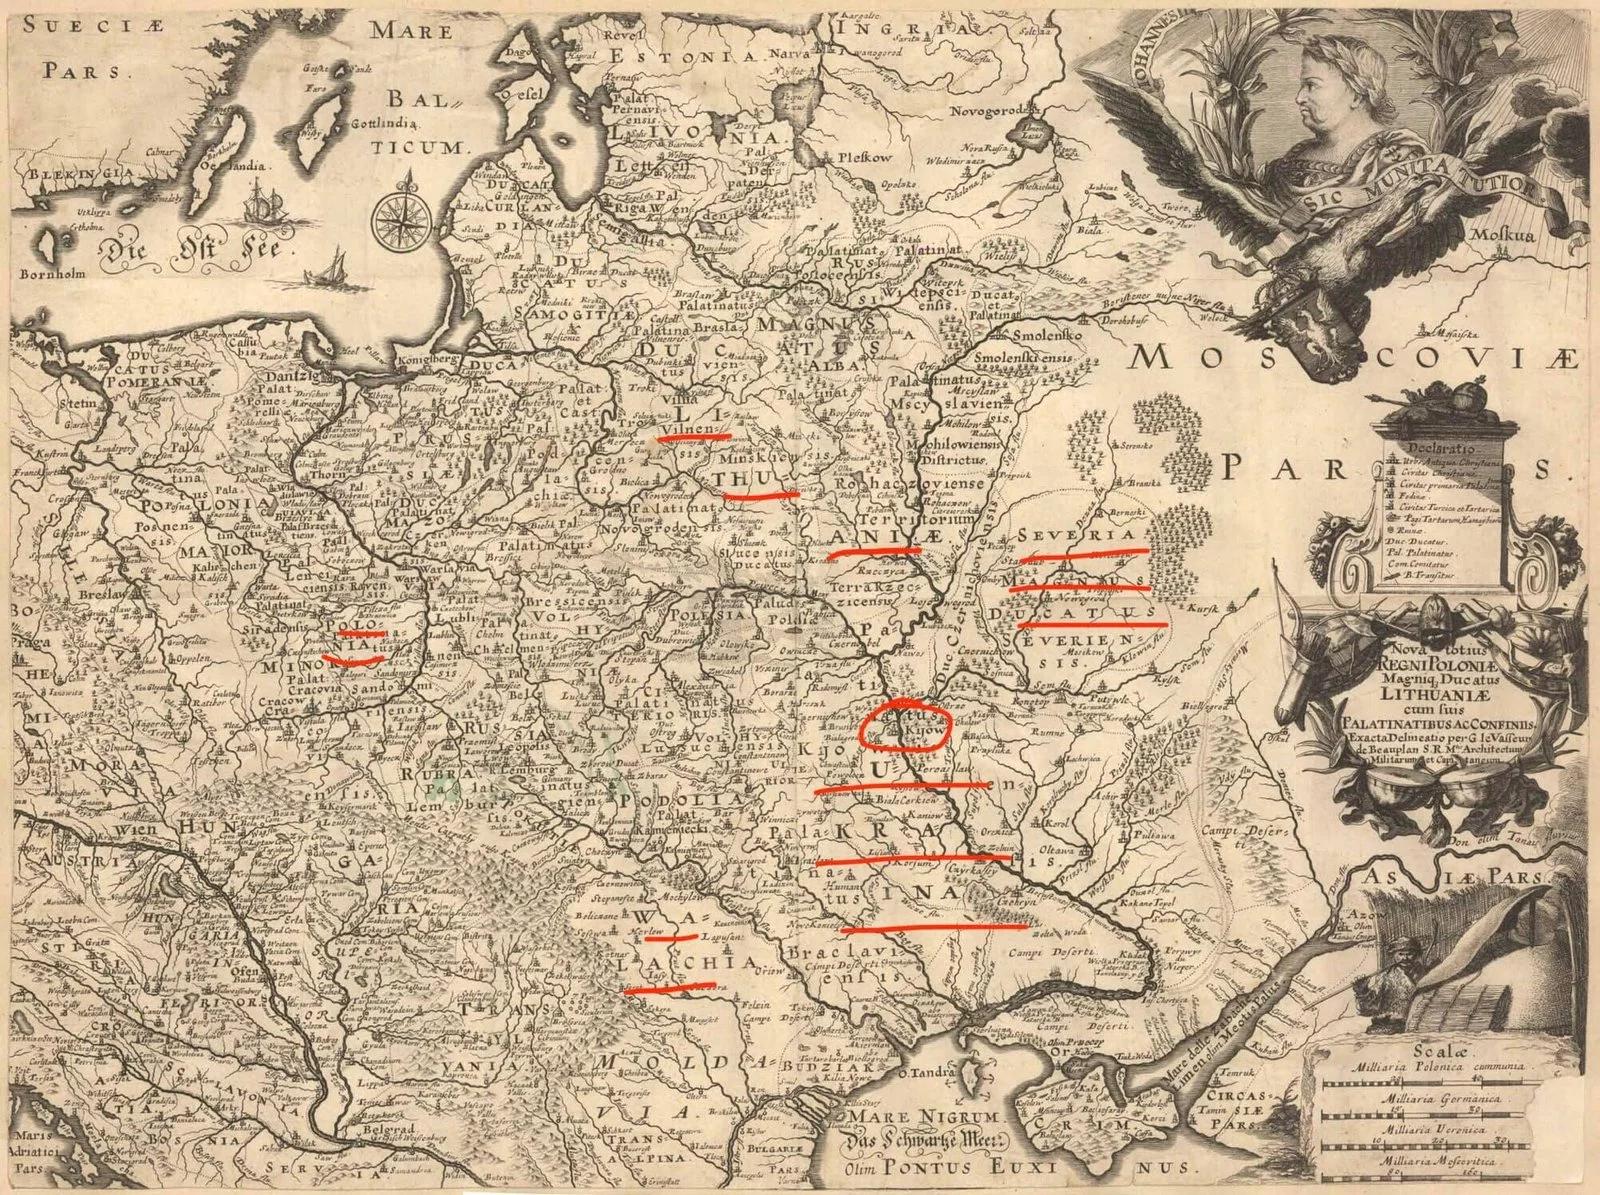 Україна на мапі 1652 року, підписана “Ukraina”